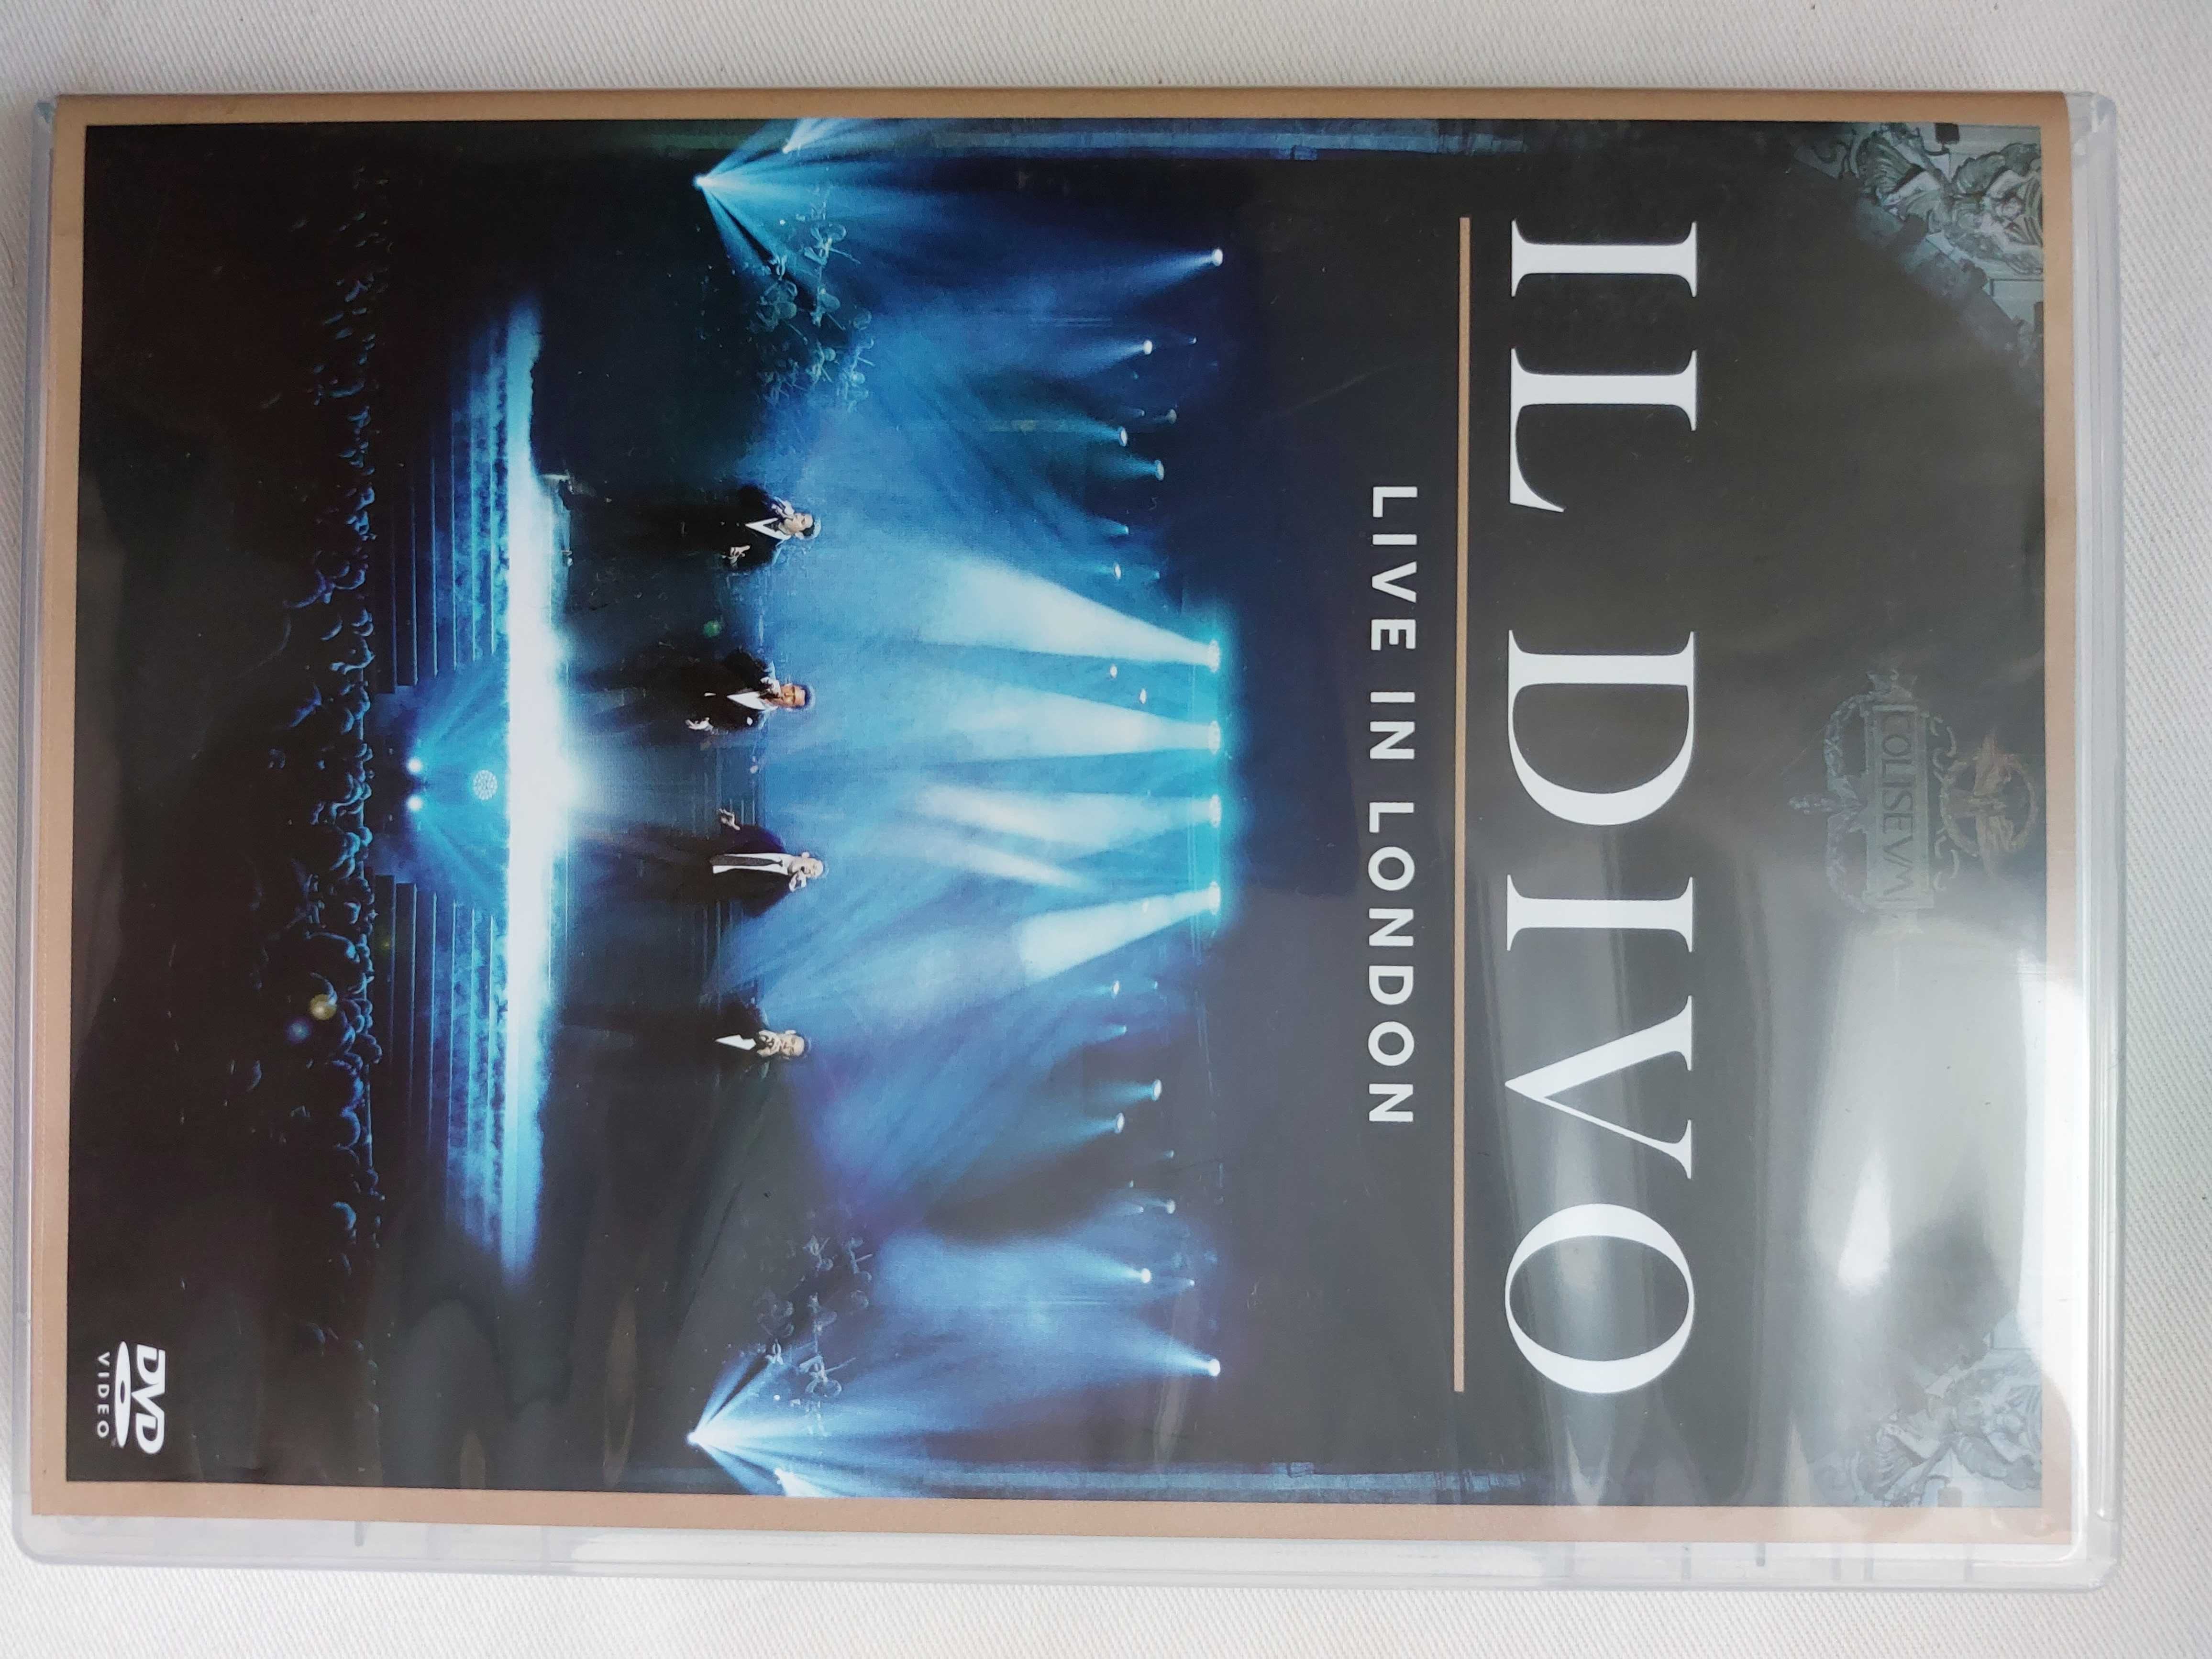 IL DIVO Live in London DVD